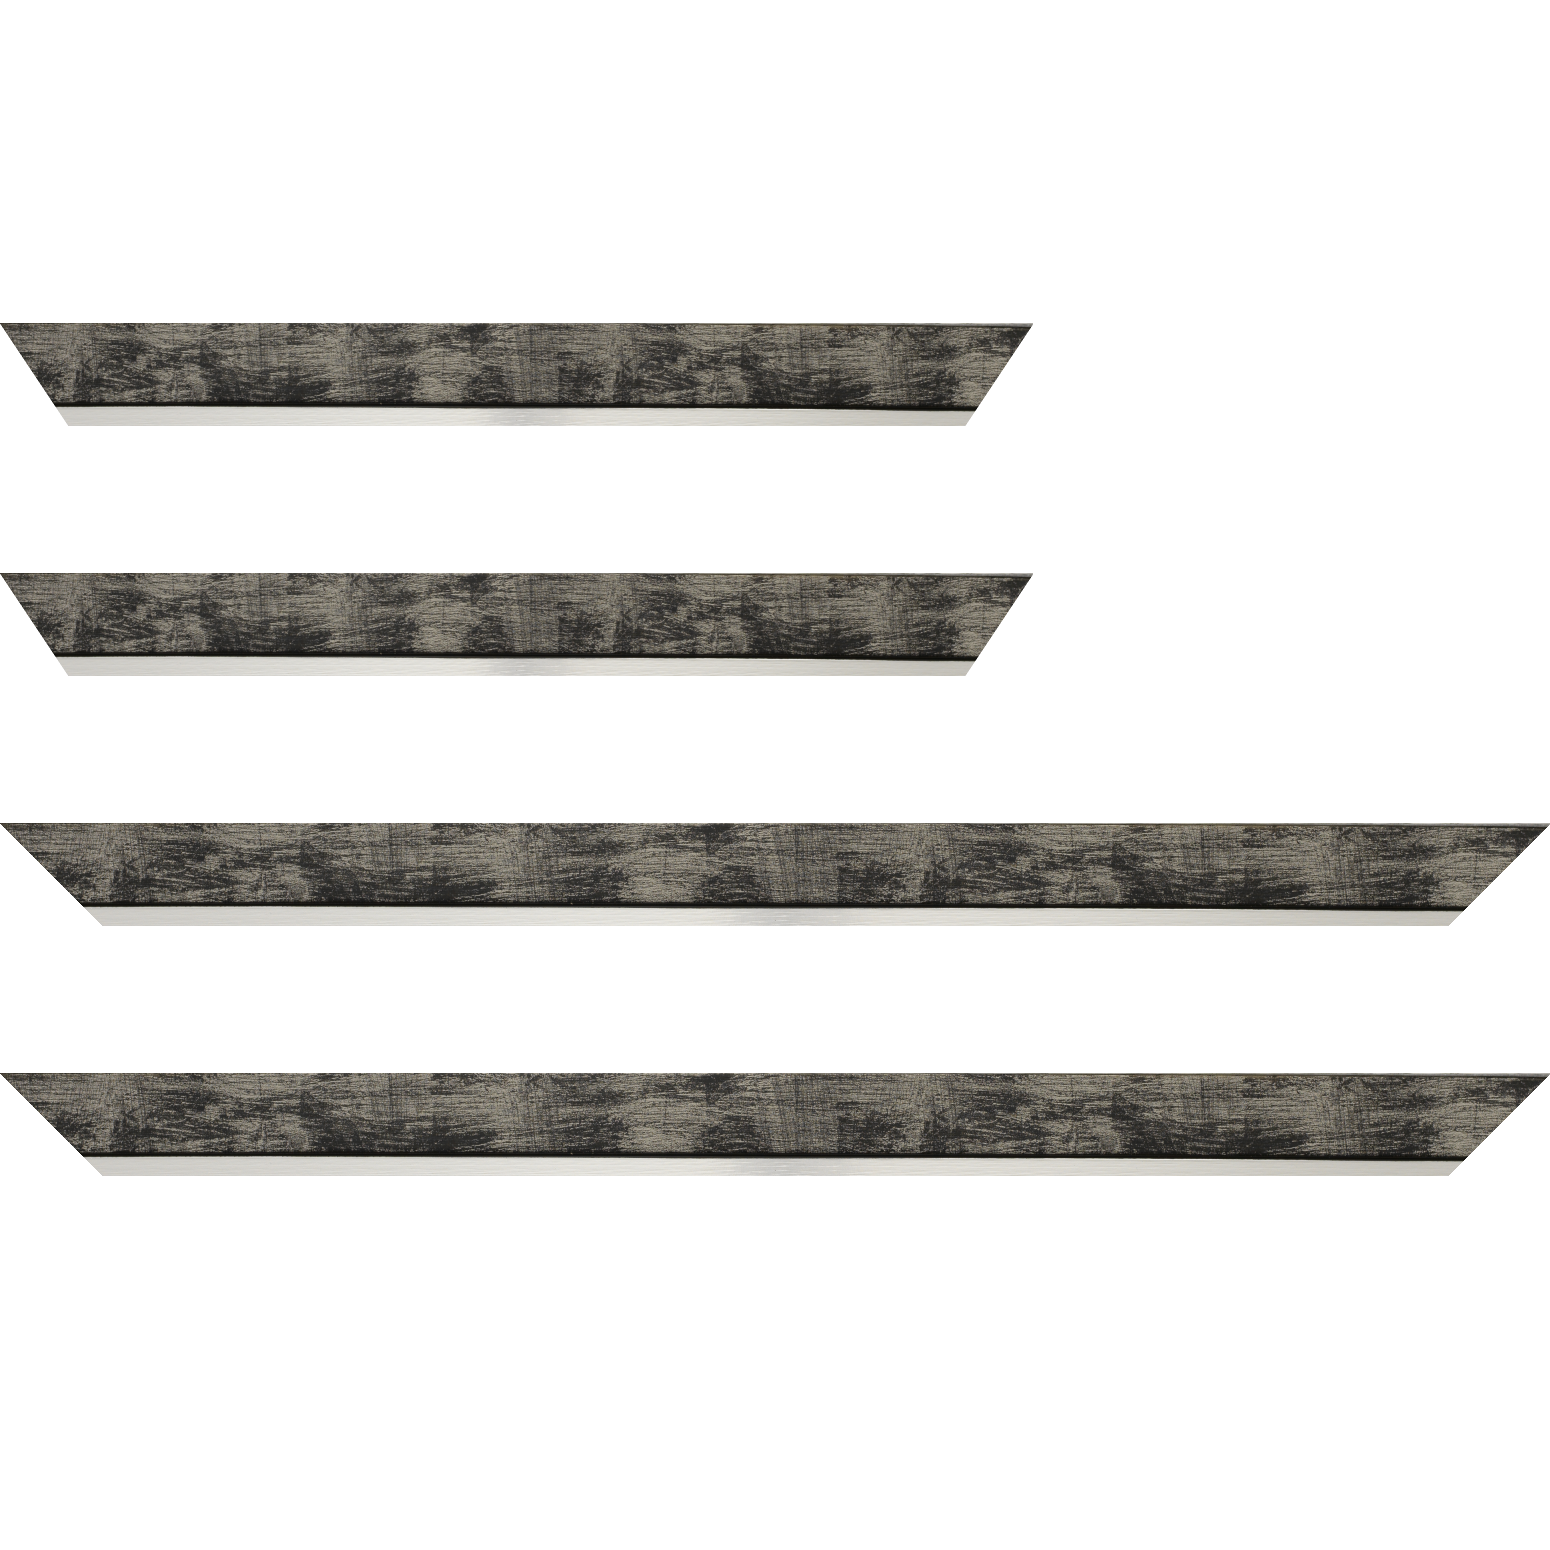 Baguette bois profil plat largeur 3.3cm couleur noir fond argent filet argent - 59.4x84.1